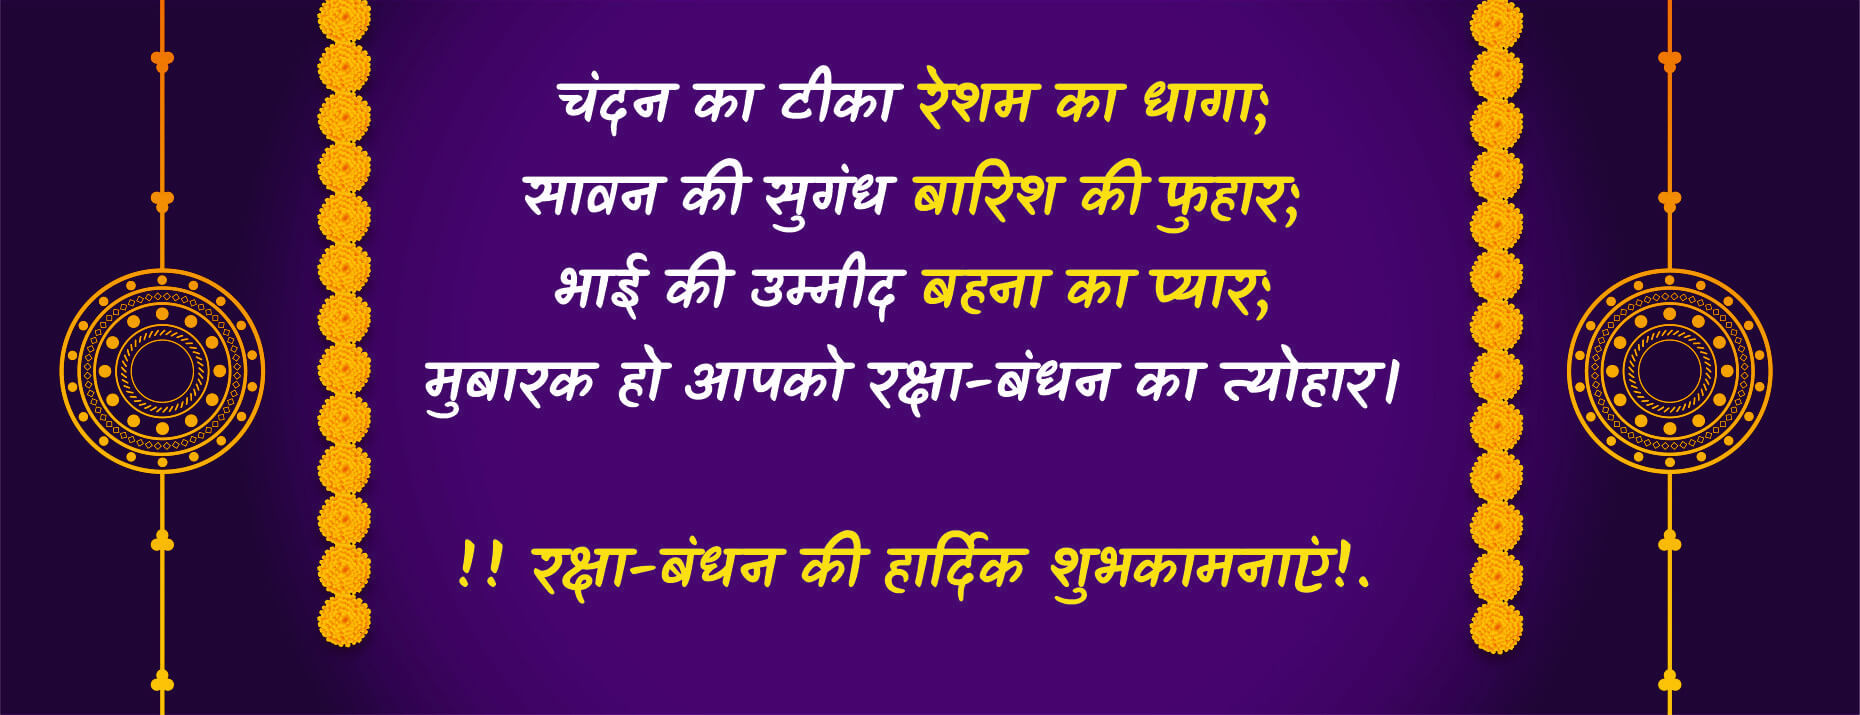 best raksha bandhan quotes in hindi